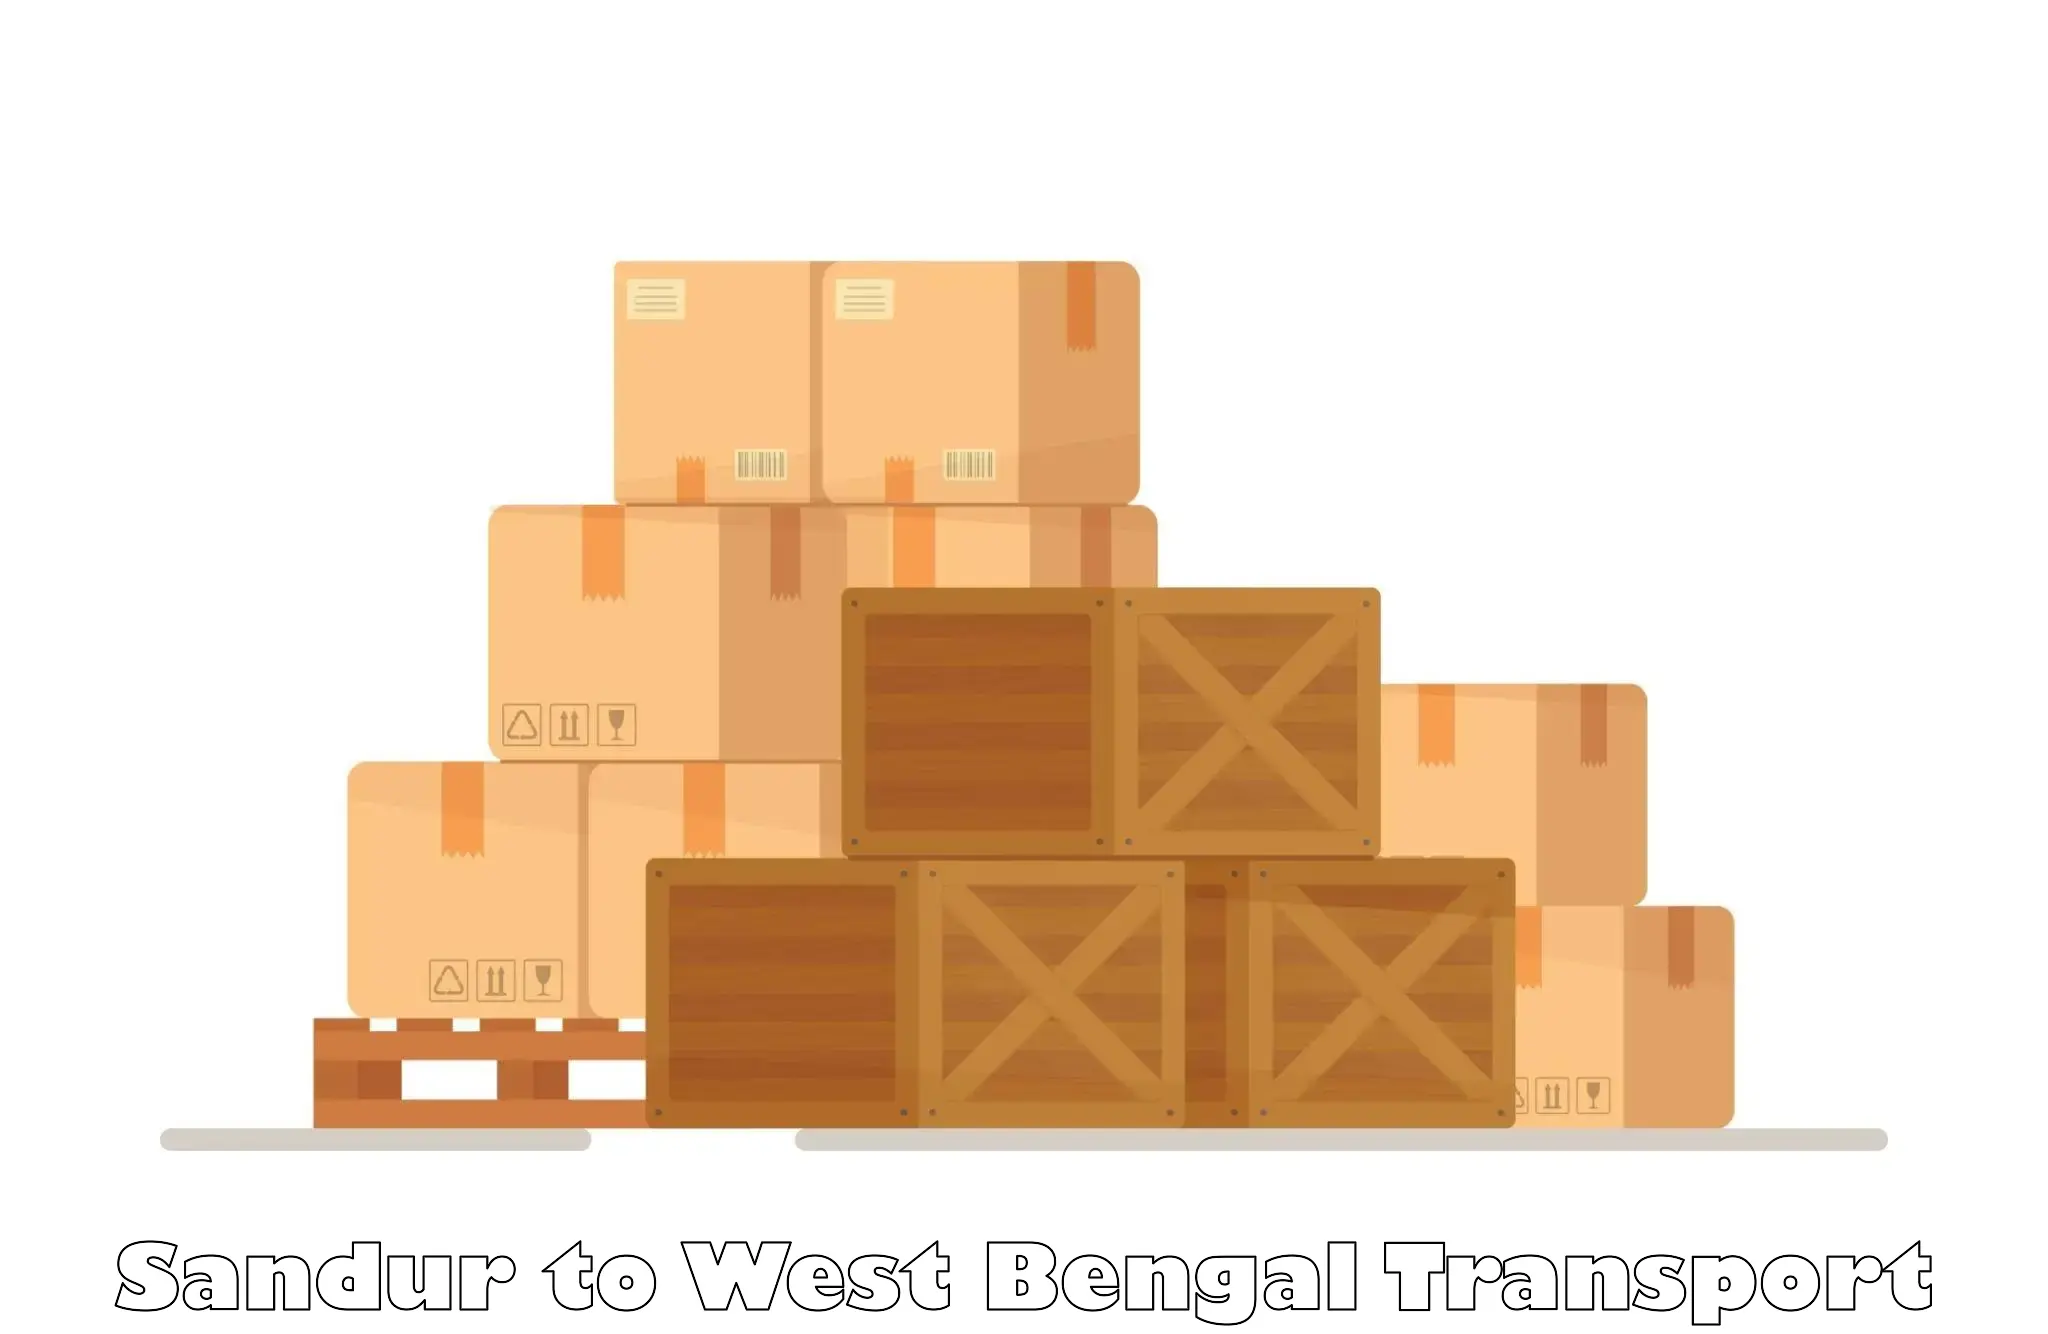 Transport in sharing Sandur to Baneswar